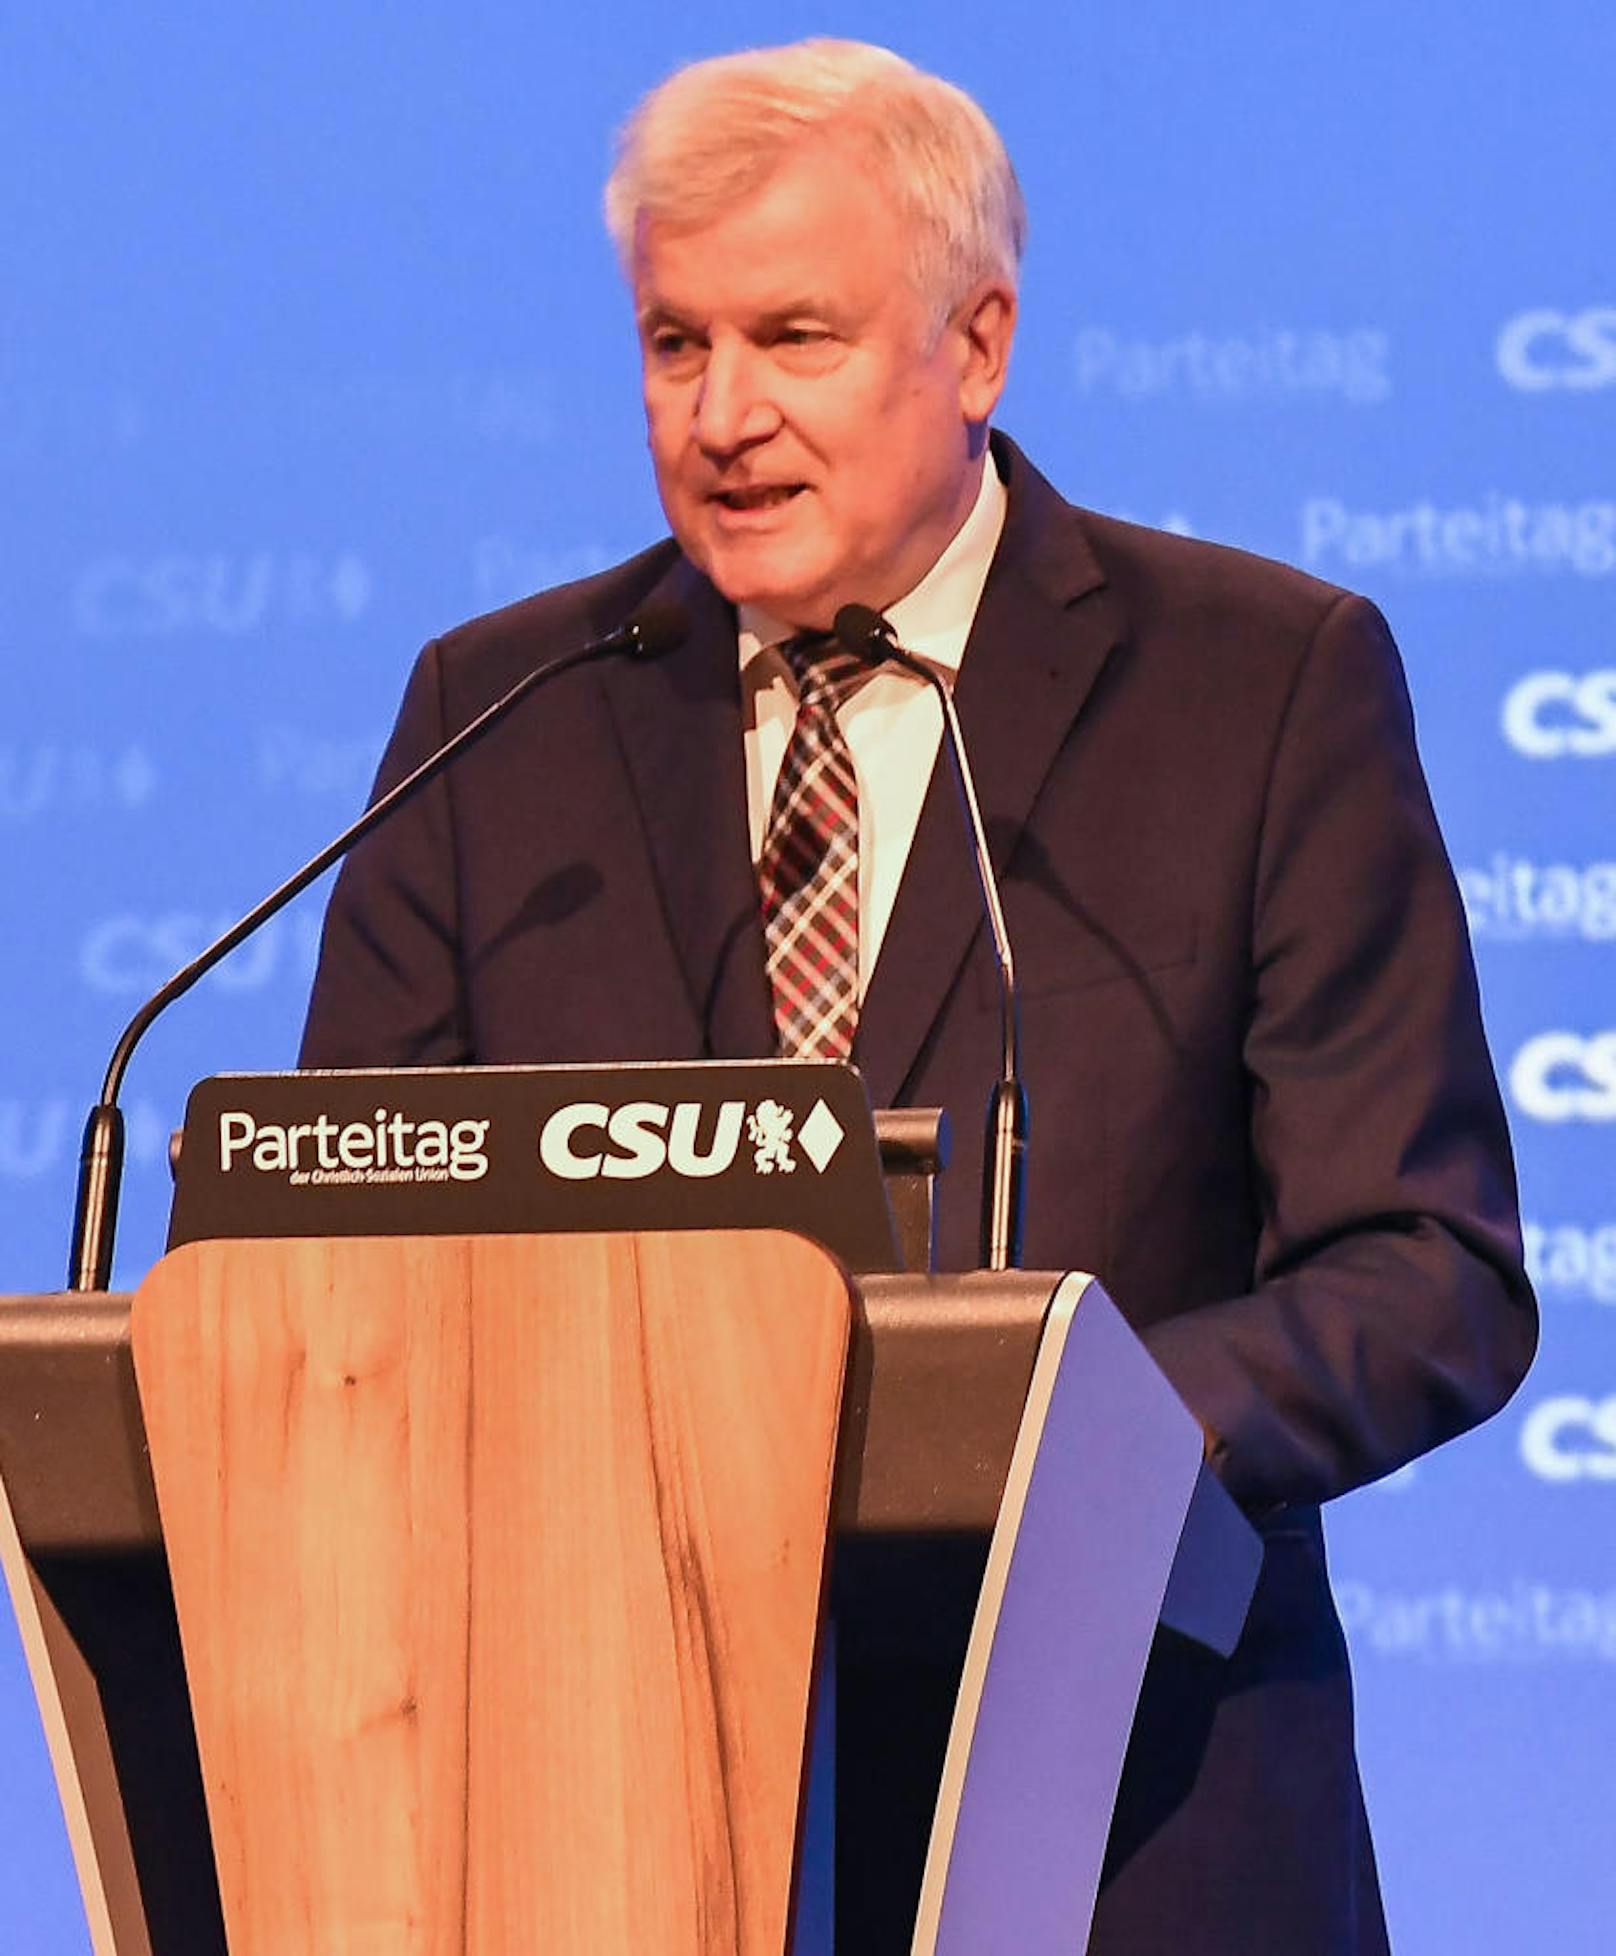 Der deutsche Innenminister Horst Seehofer (CSU) spricht von einer "hochproblematischen Verrohung unserer Gesellschaft".